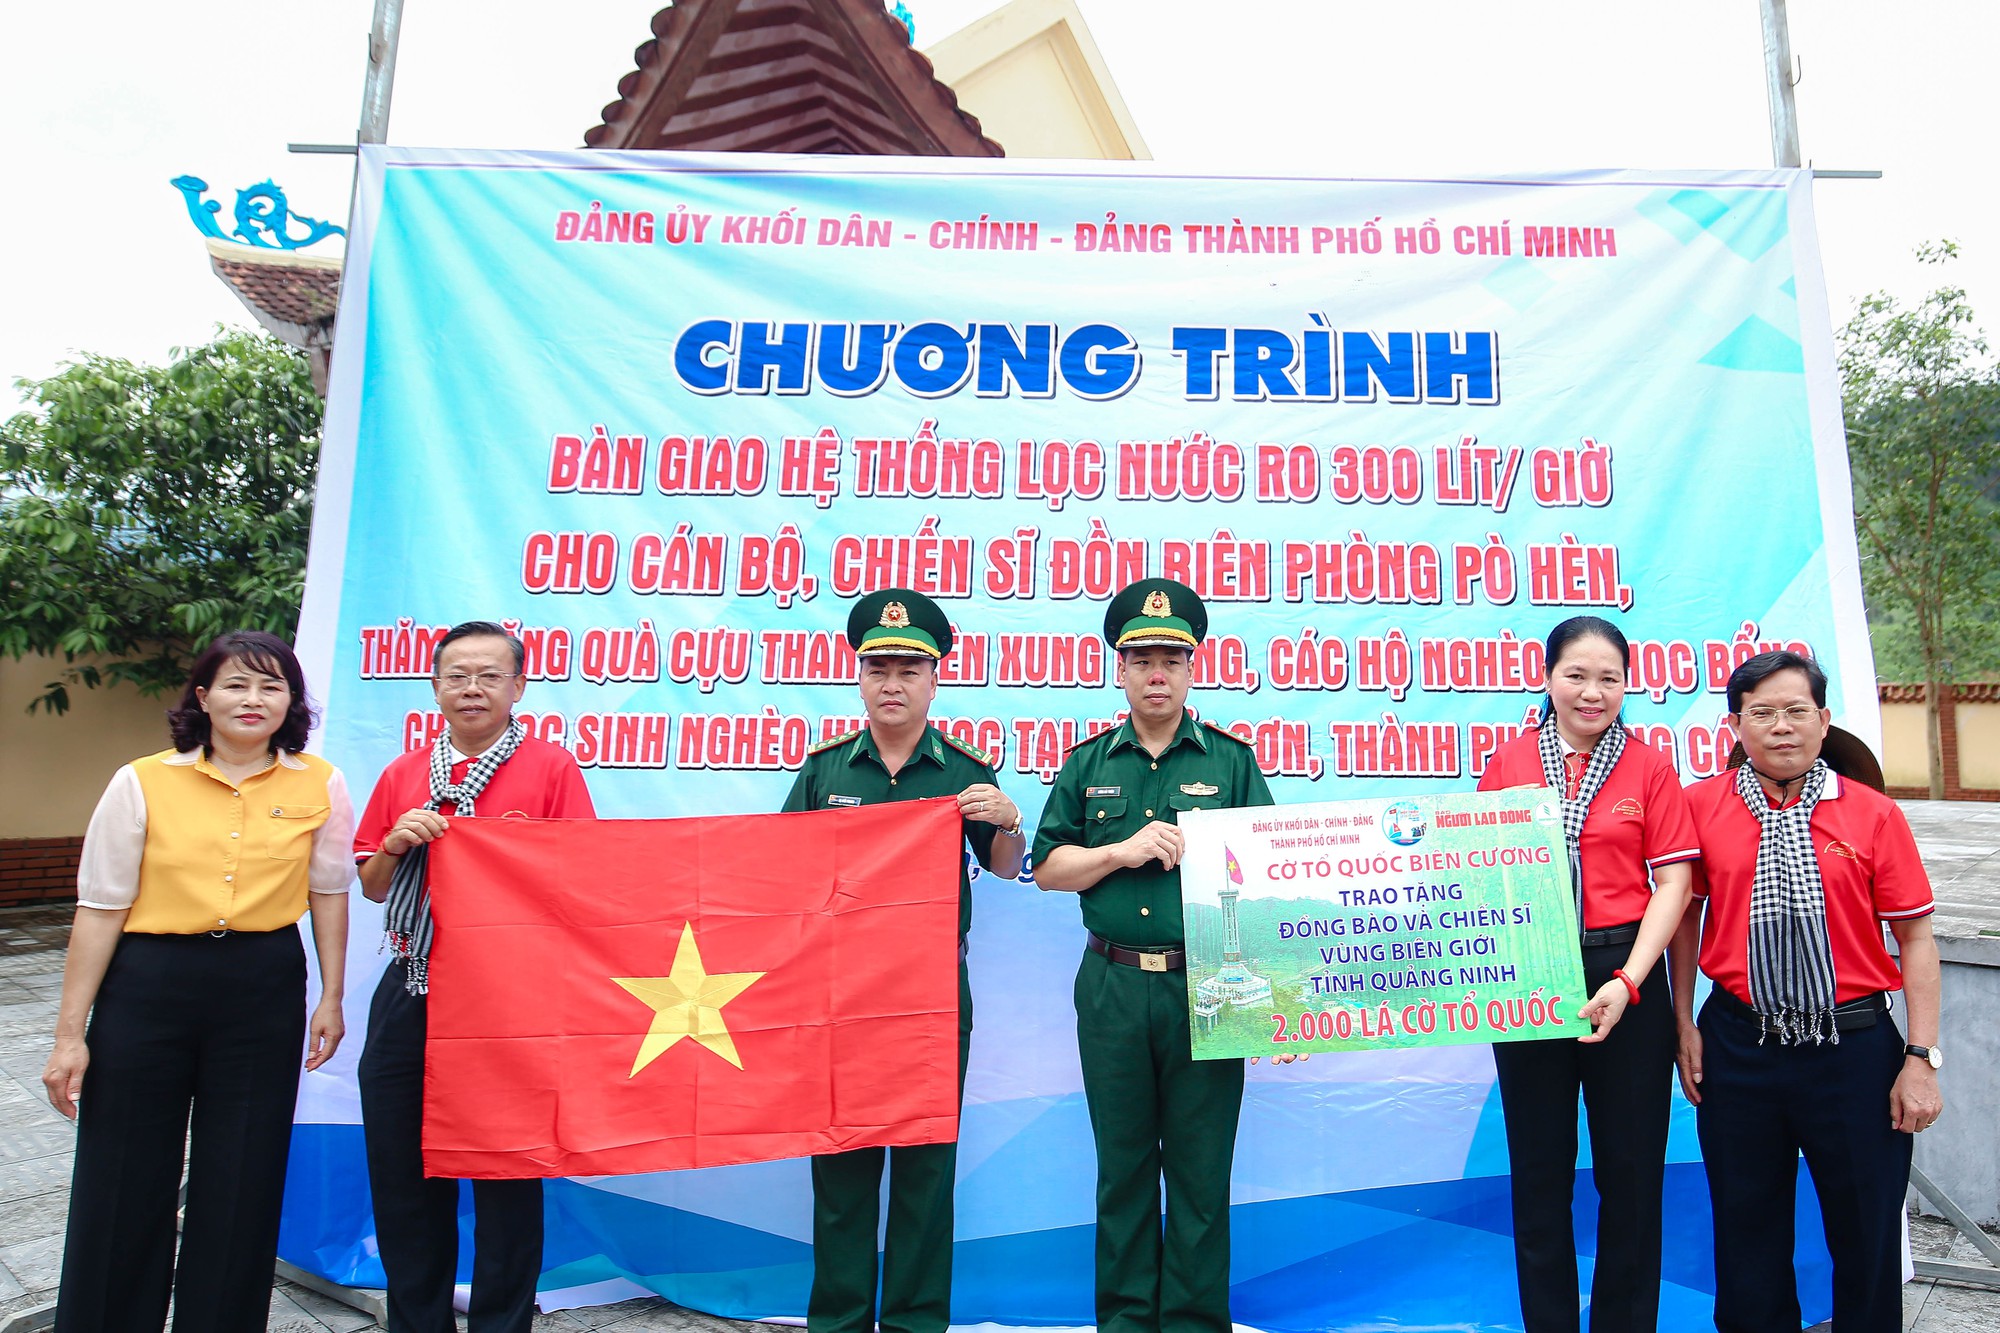 Ngư dân Việt Nam luôn mang trong mình tình yêu đất nước và lá cờ Tổ quốc. Hình ảnh những con tàu cá vô số bao quanh lá cờ rực lửa cùng rìa biển đầy gió vẫn còn là kỷ niệm đẹp suốt cả một thời đại. Hãy để mình bị cuốn hút bởi hình ảnh đó trên trang web của chúng tôi.